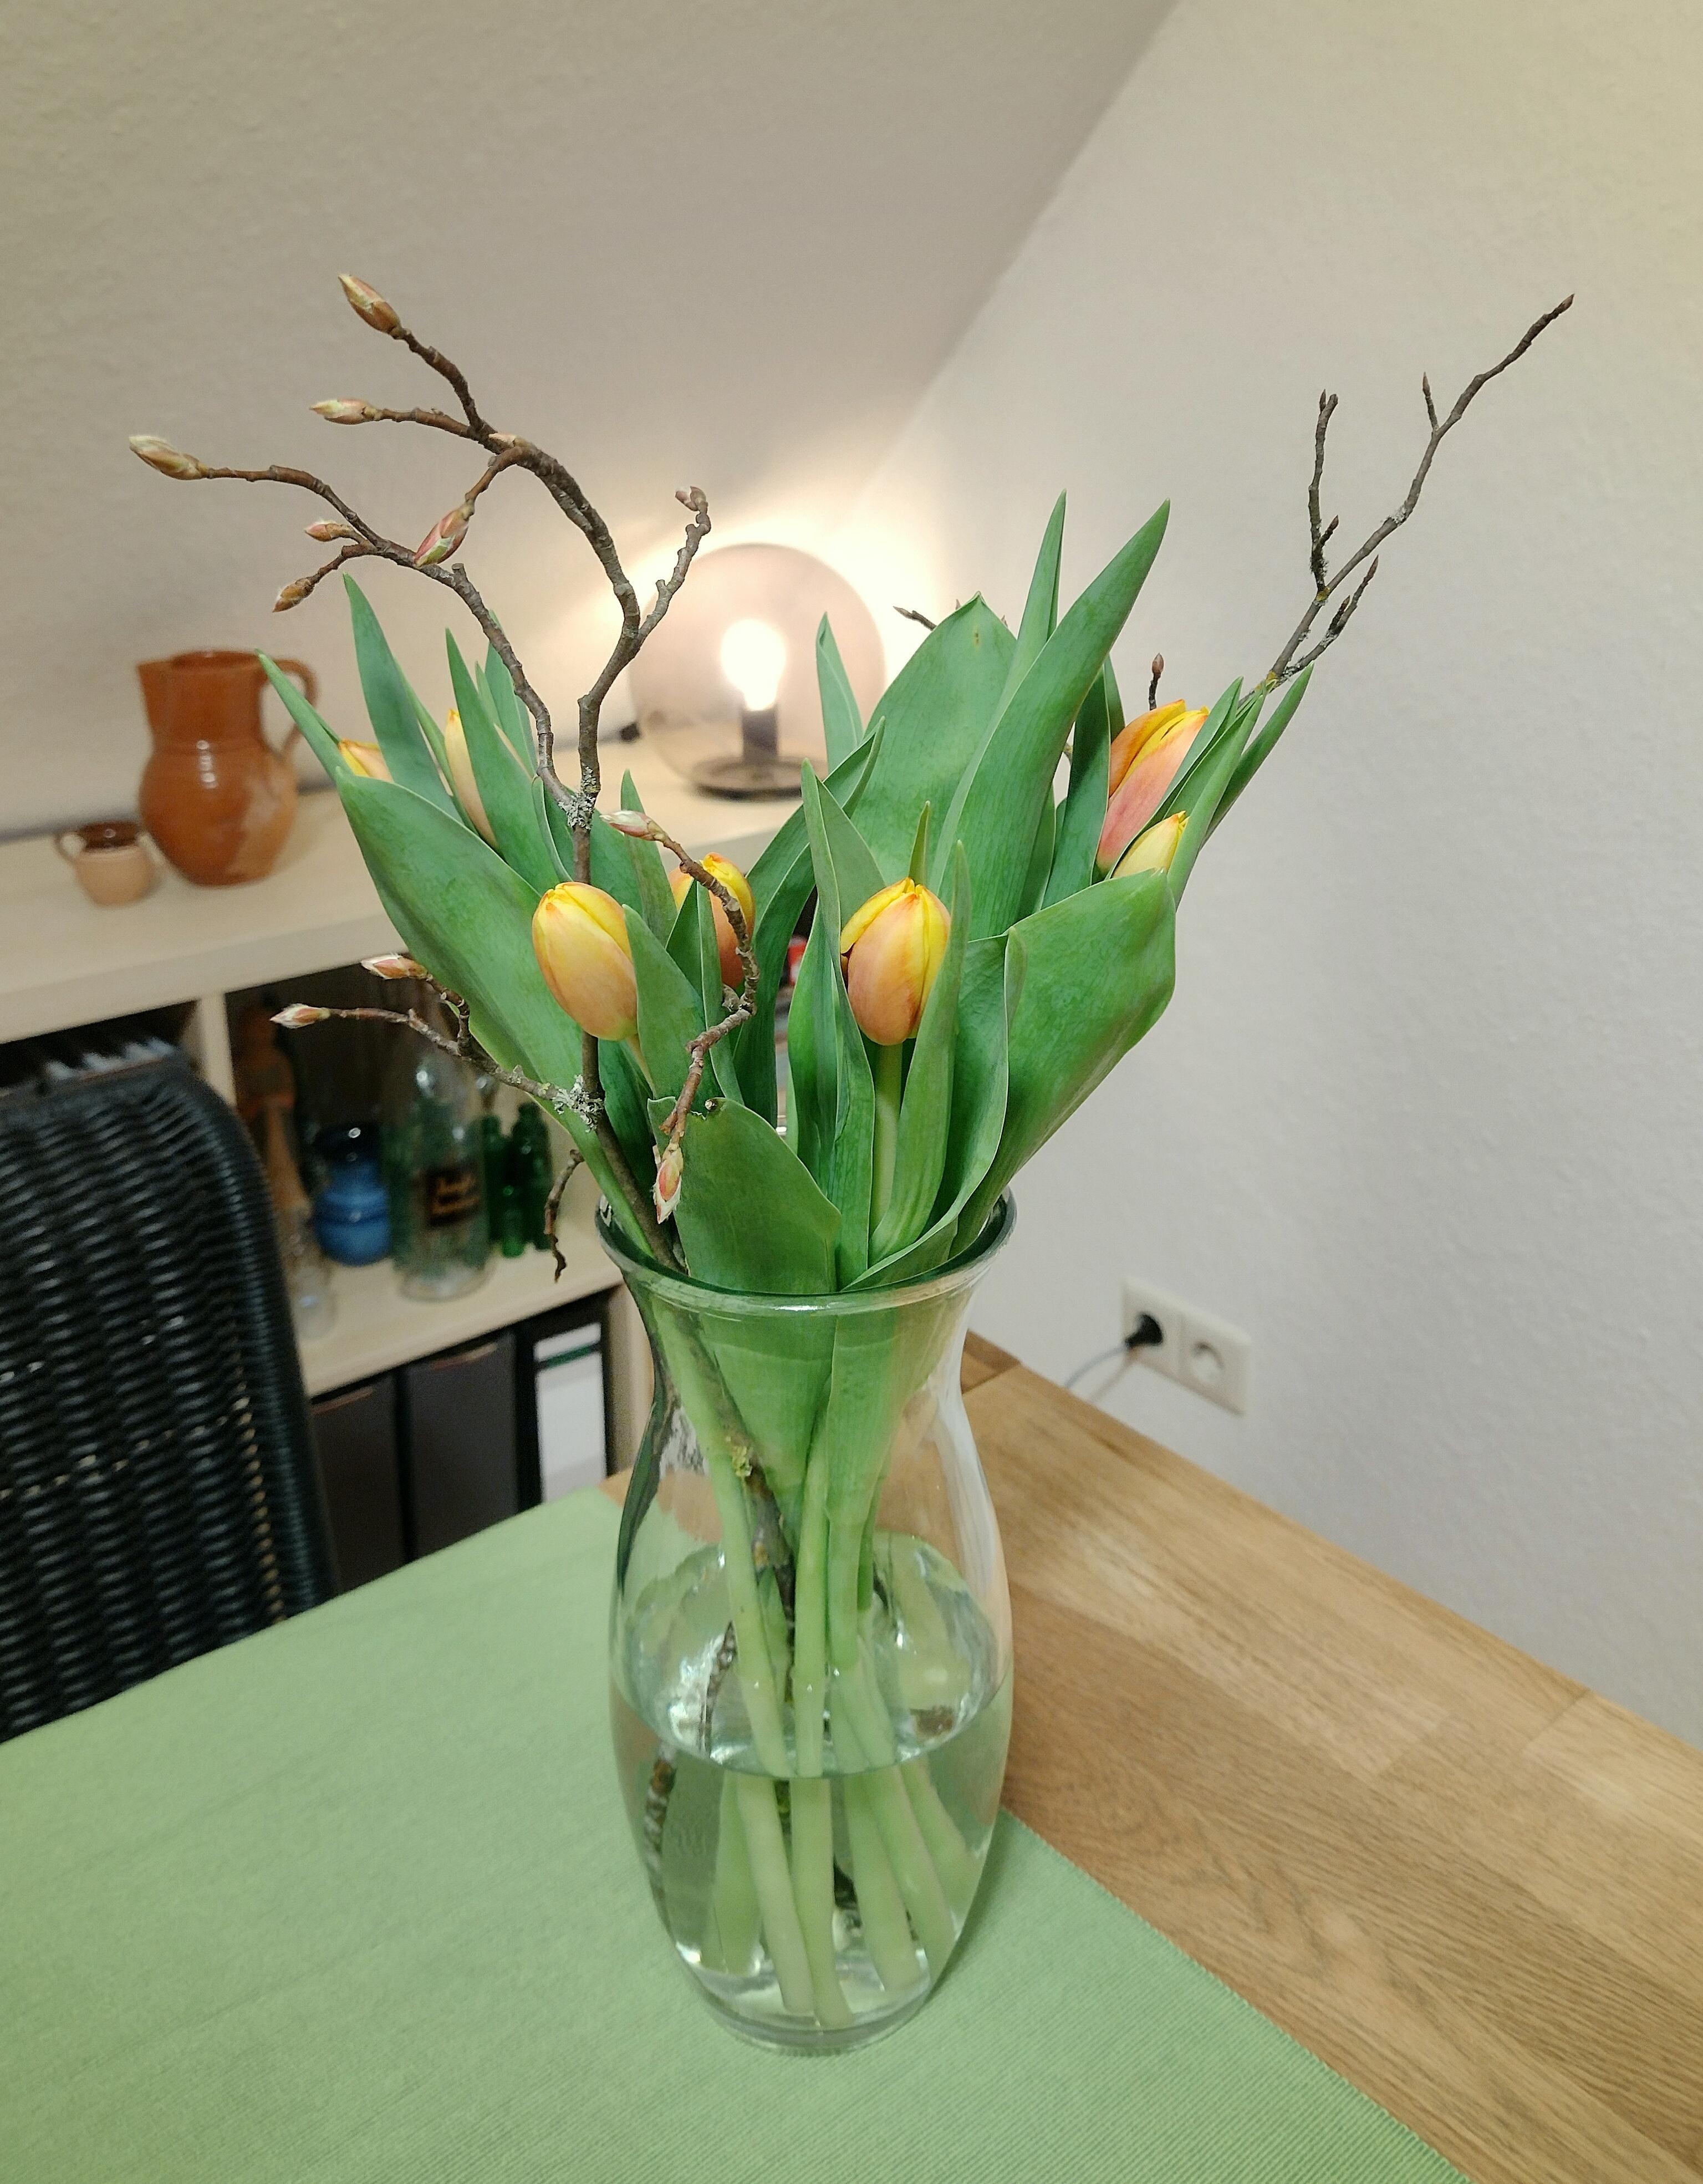 #frischeblumen #blumenliebe #frühling #esstisch #tulpen #glasvase